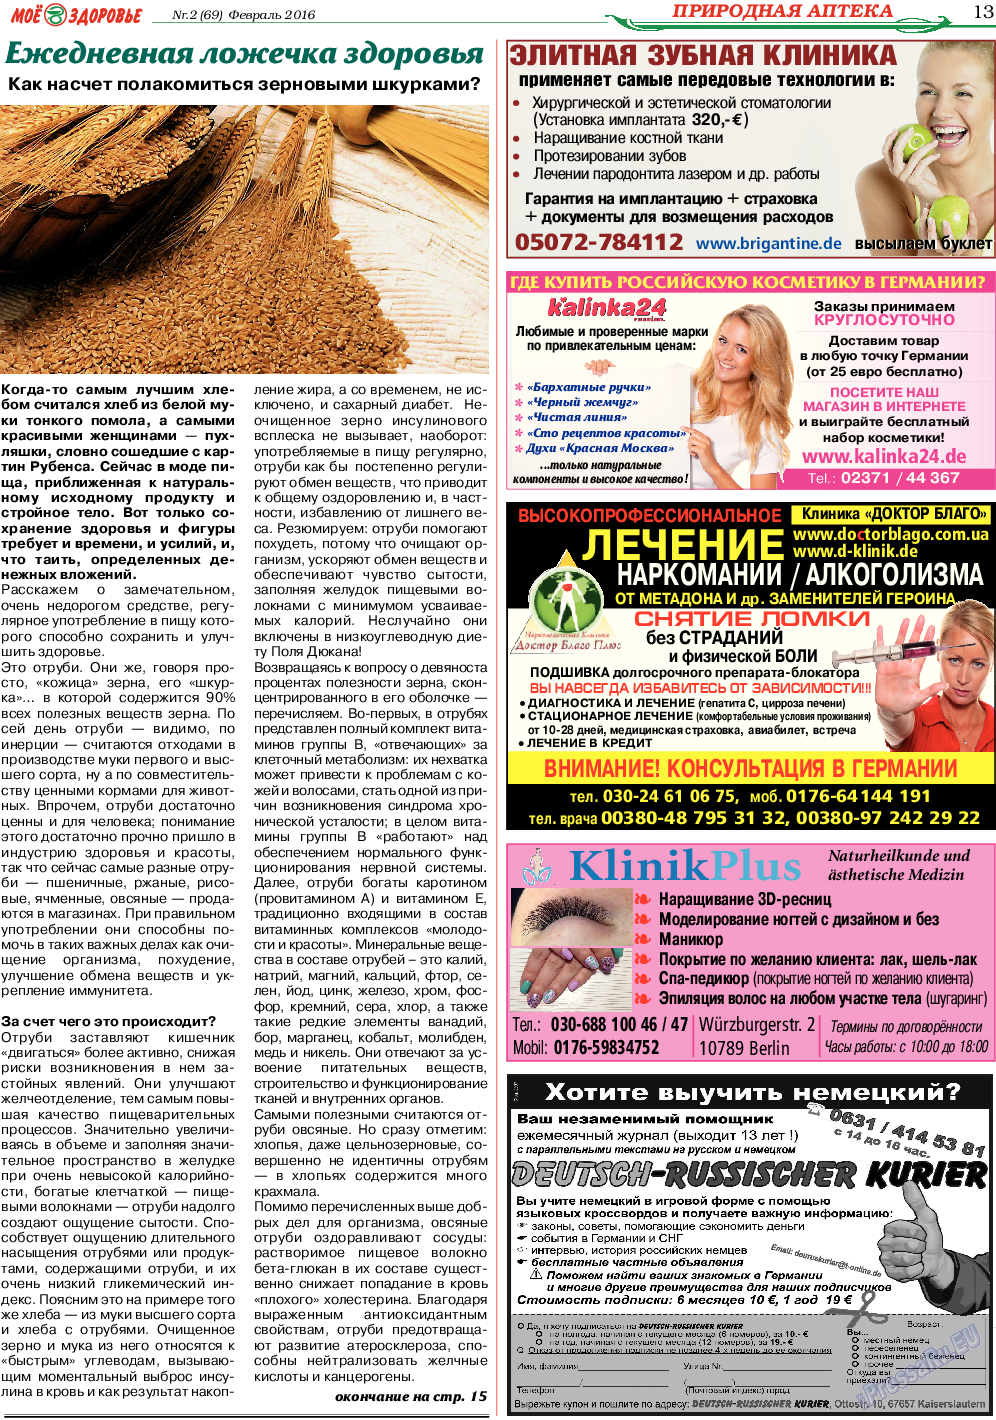 Кругозор, газета. 2016 №2 стр.13